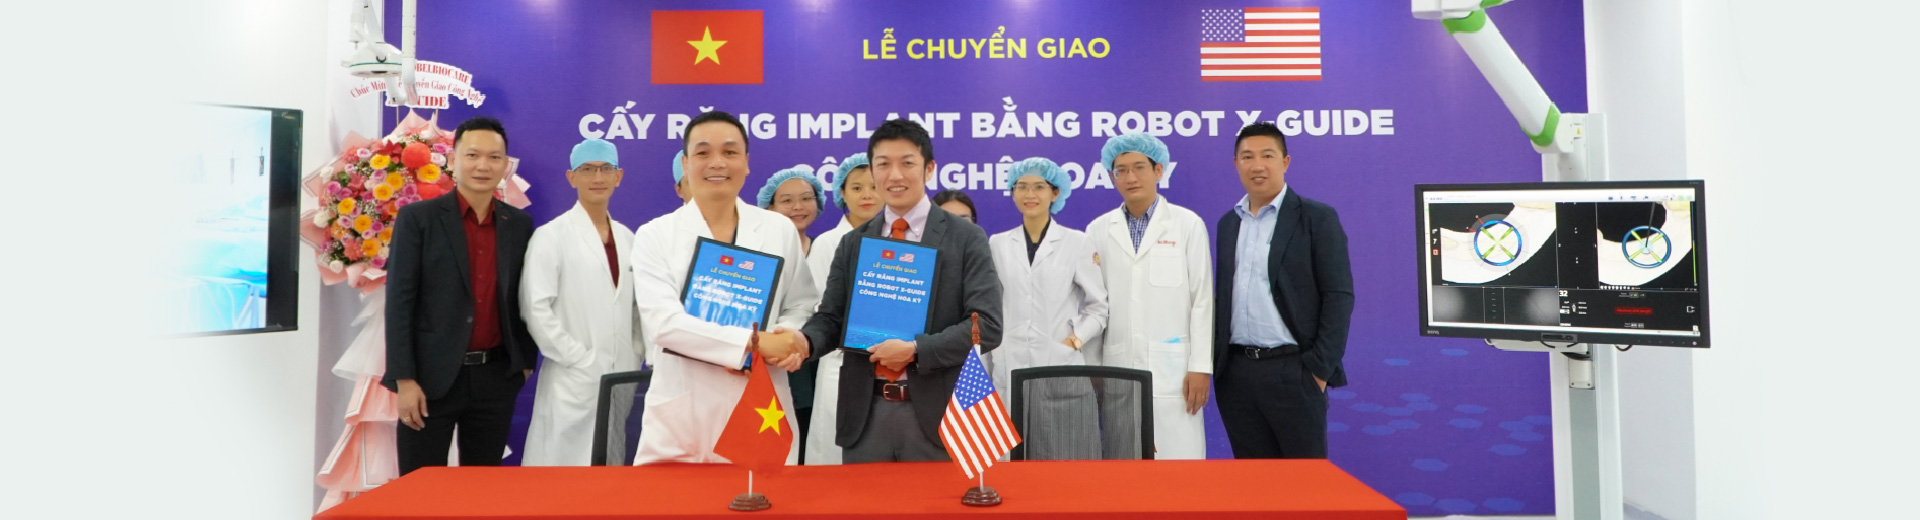 Nha Khoa Kim đầu tư Robot X-guide cấy ghép Implant công nghệ Hoa Kỳ